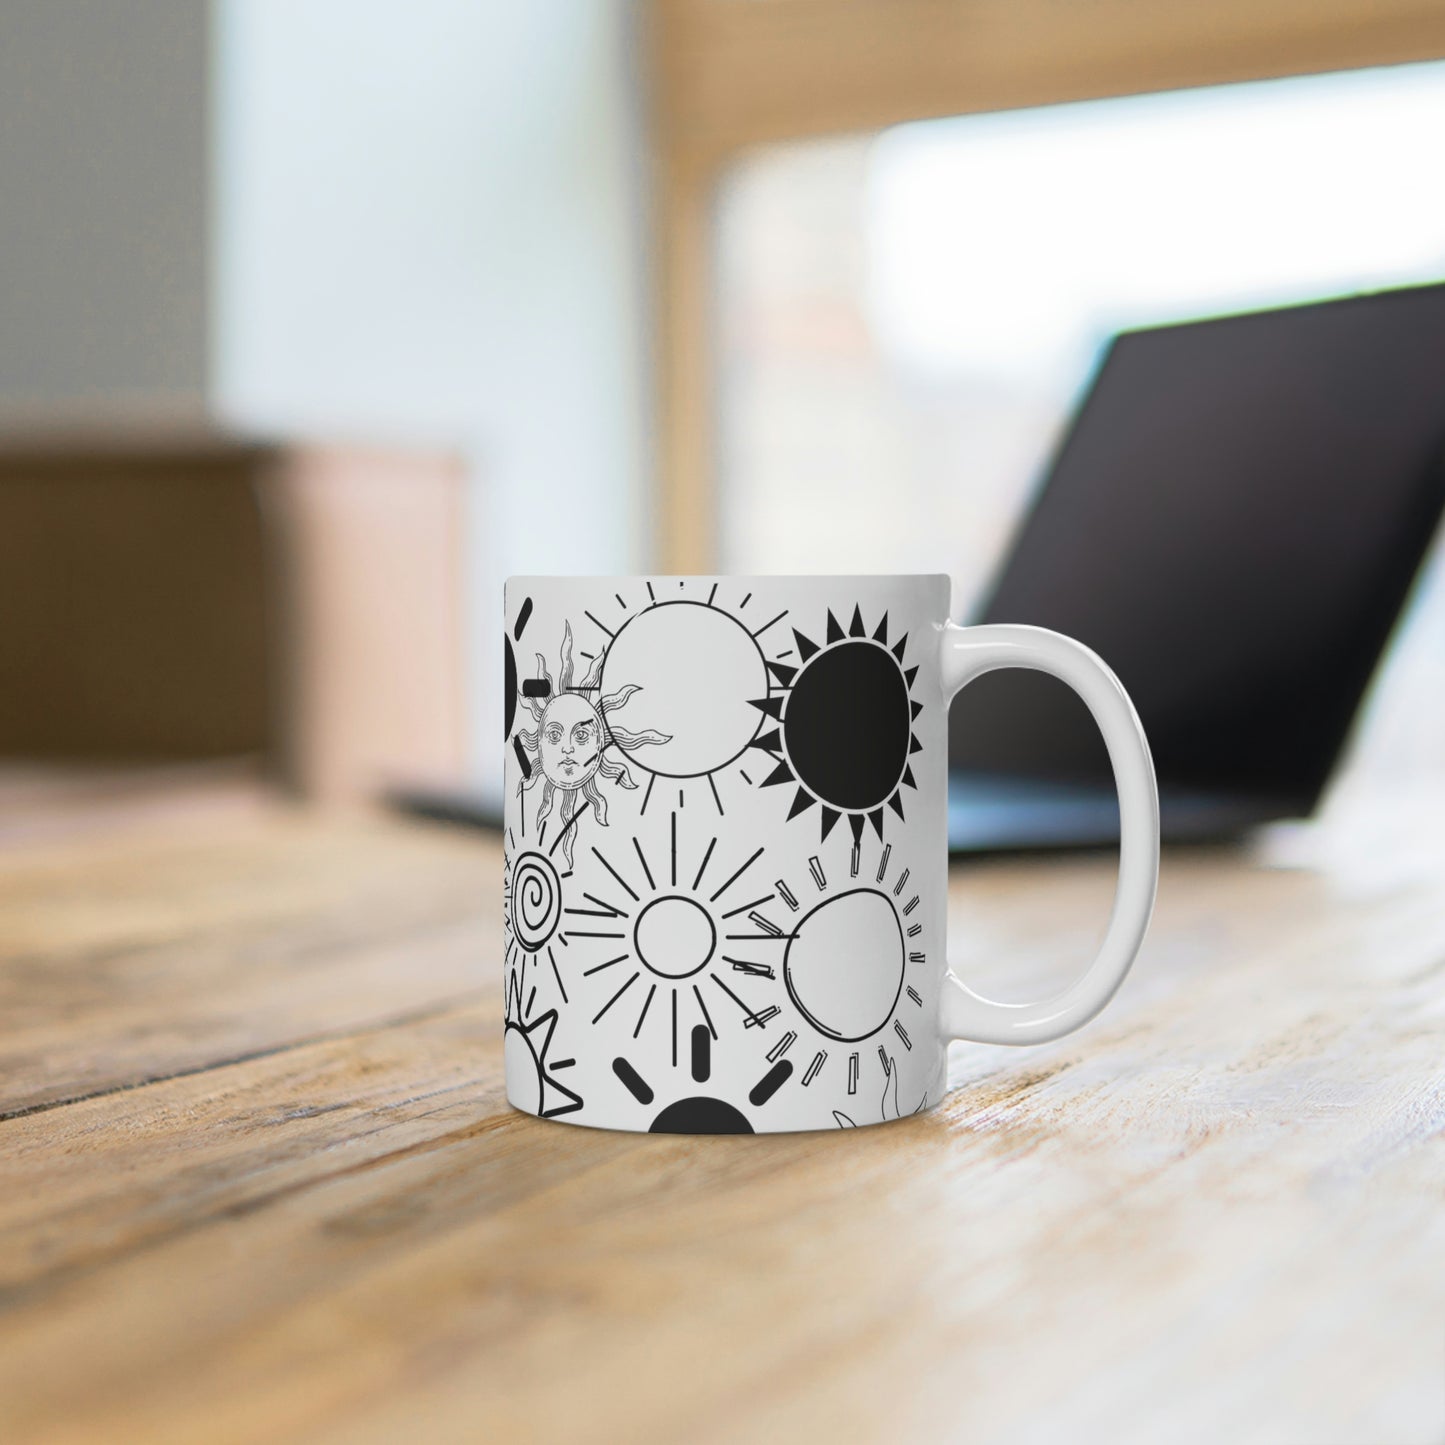 Suns coffee mug - White Ceramic Mug